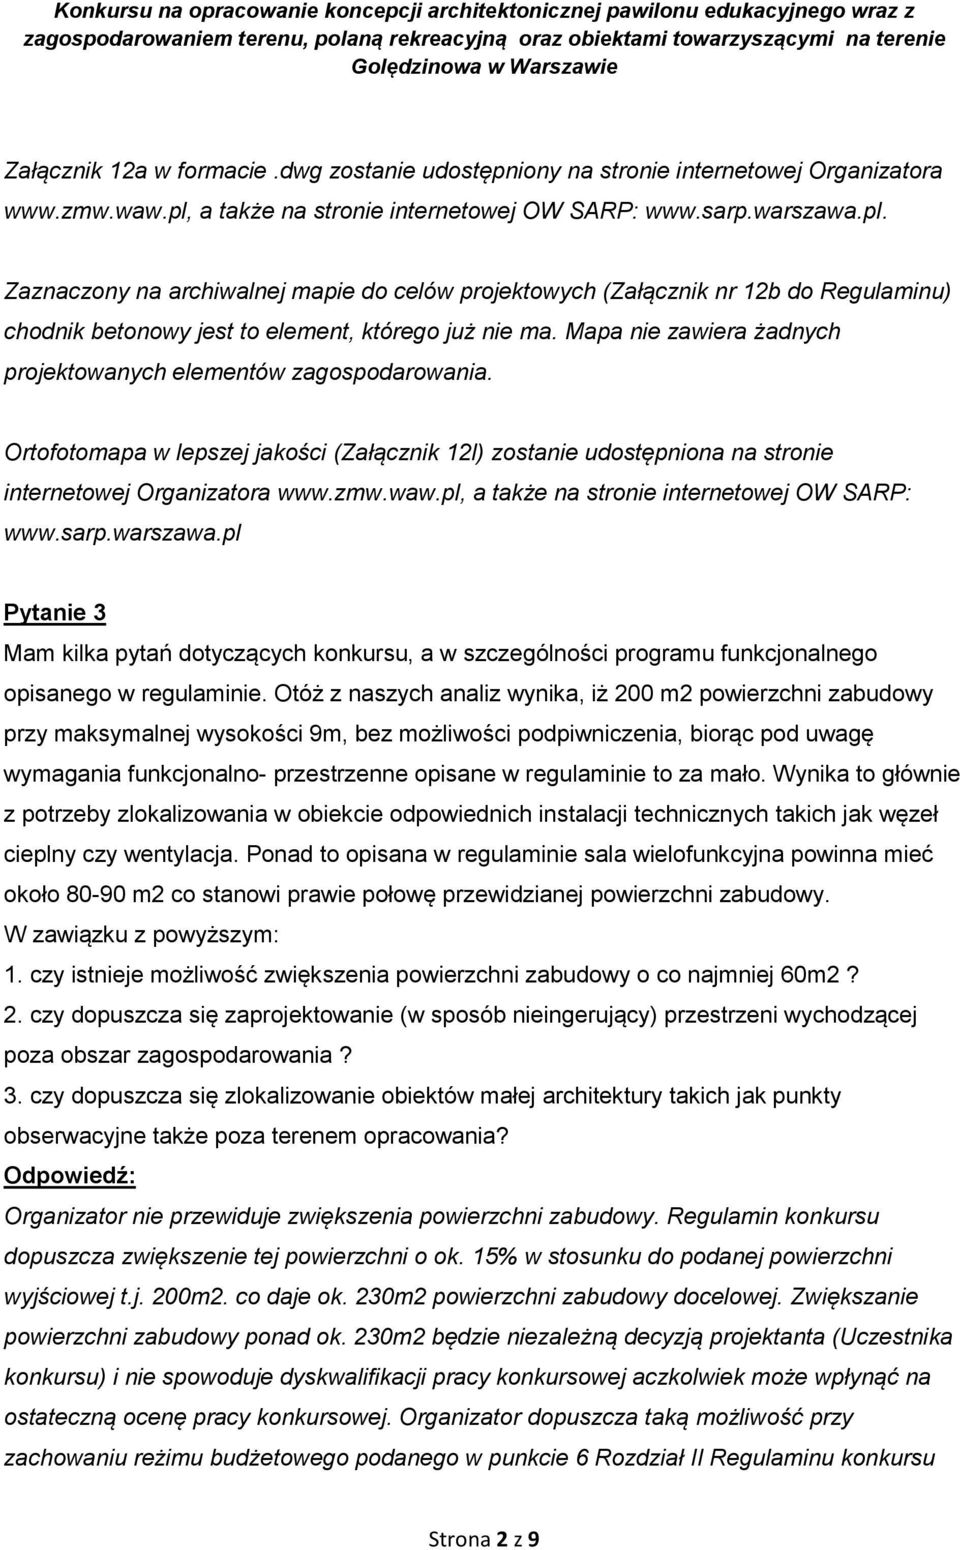 pl, a także na stronie internetowej OW SARP: www.sarp.warszawa.pl Pytanie 3 Mam kilka pytań dotyczących konkursu, a w szczególności programu funkcjonalnego opisanego w regulaminie.